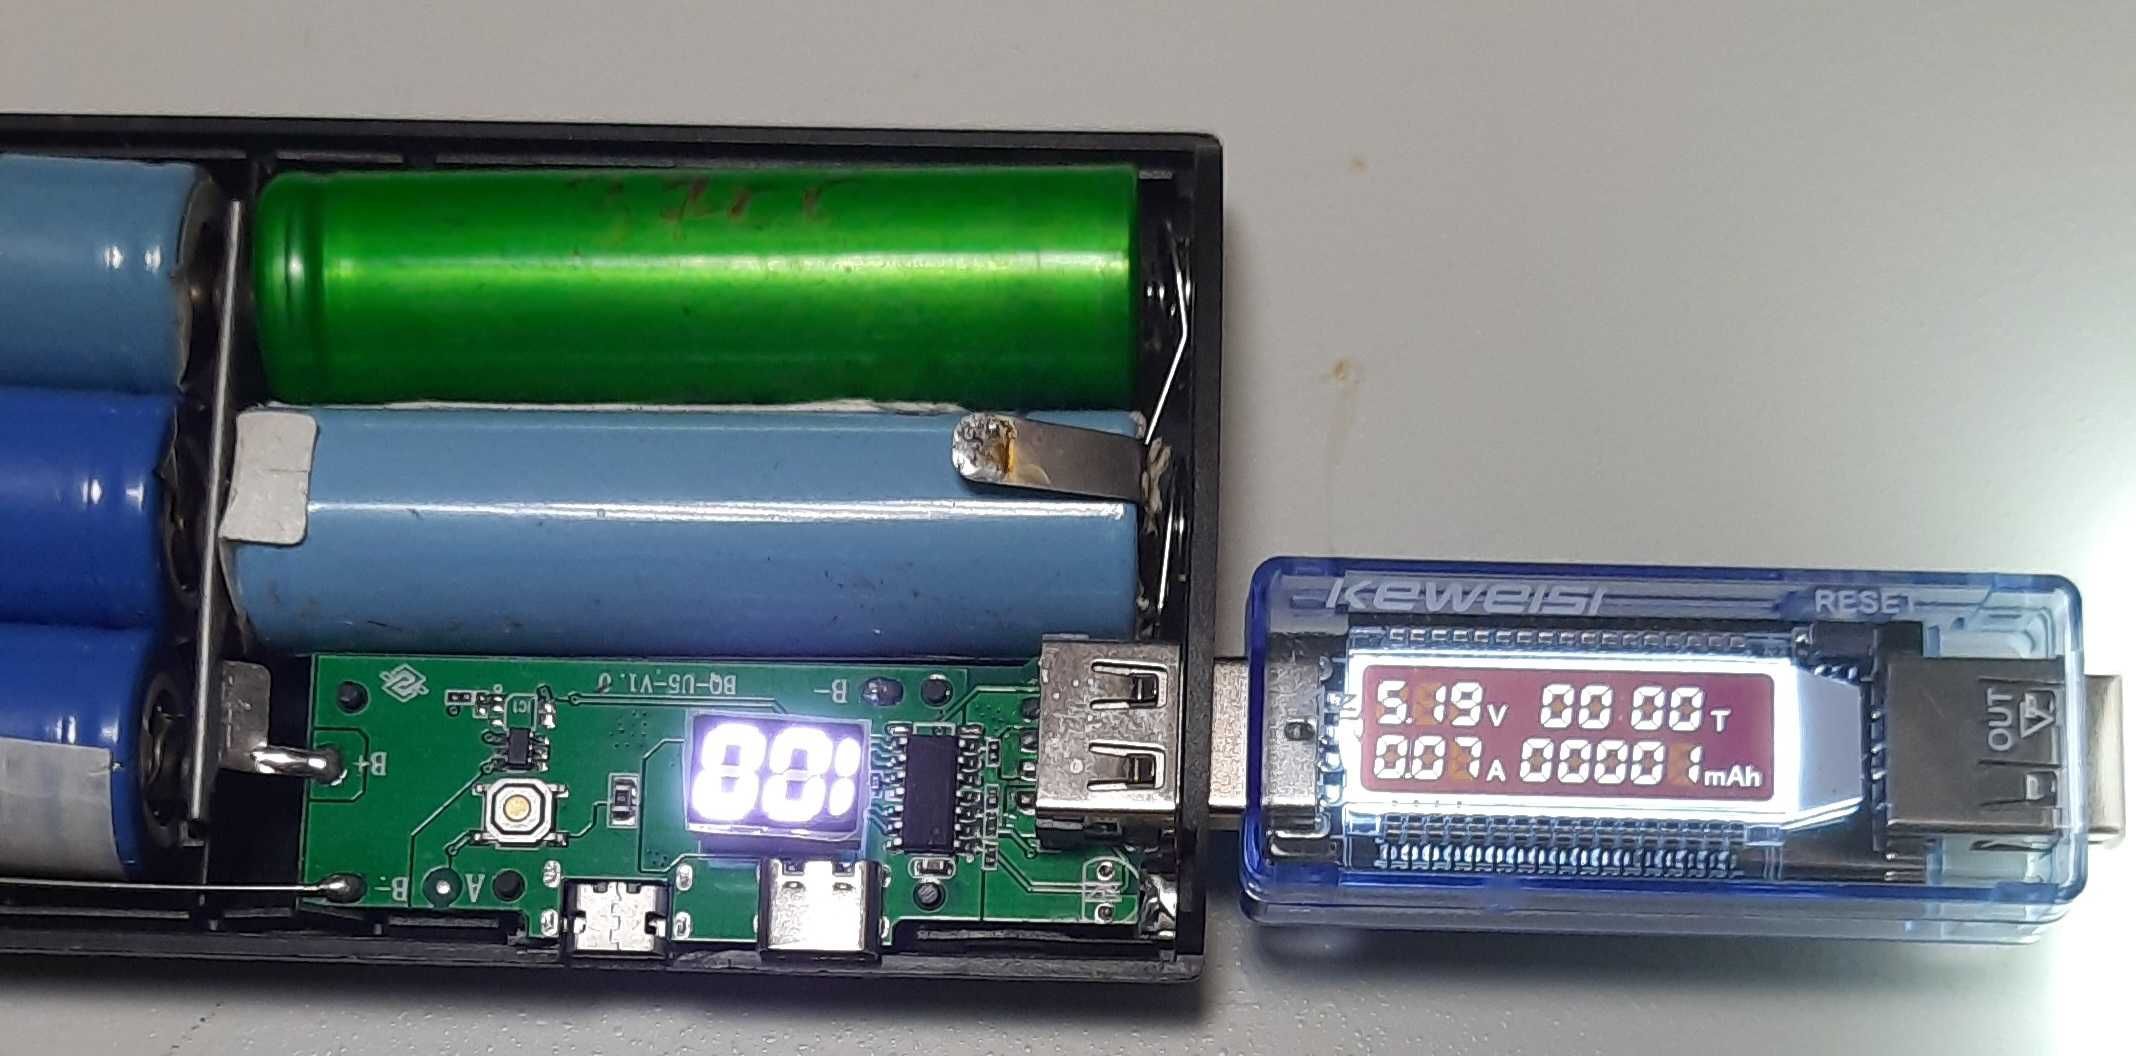 USB тестер  (Keweisi KWS-V20 вольтметр амперметр ємність)вклч.ОЛХ-дост